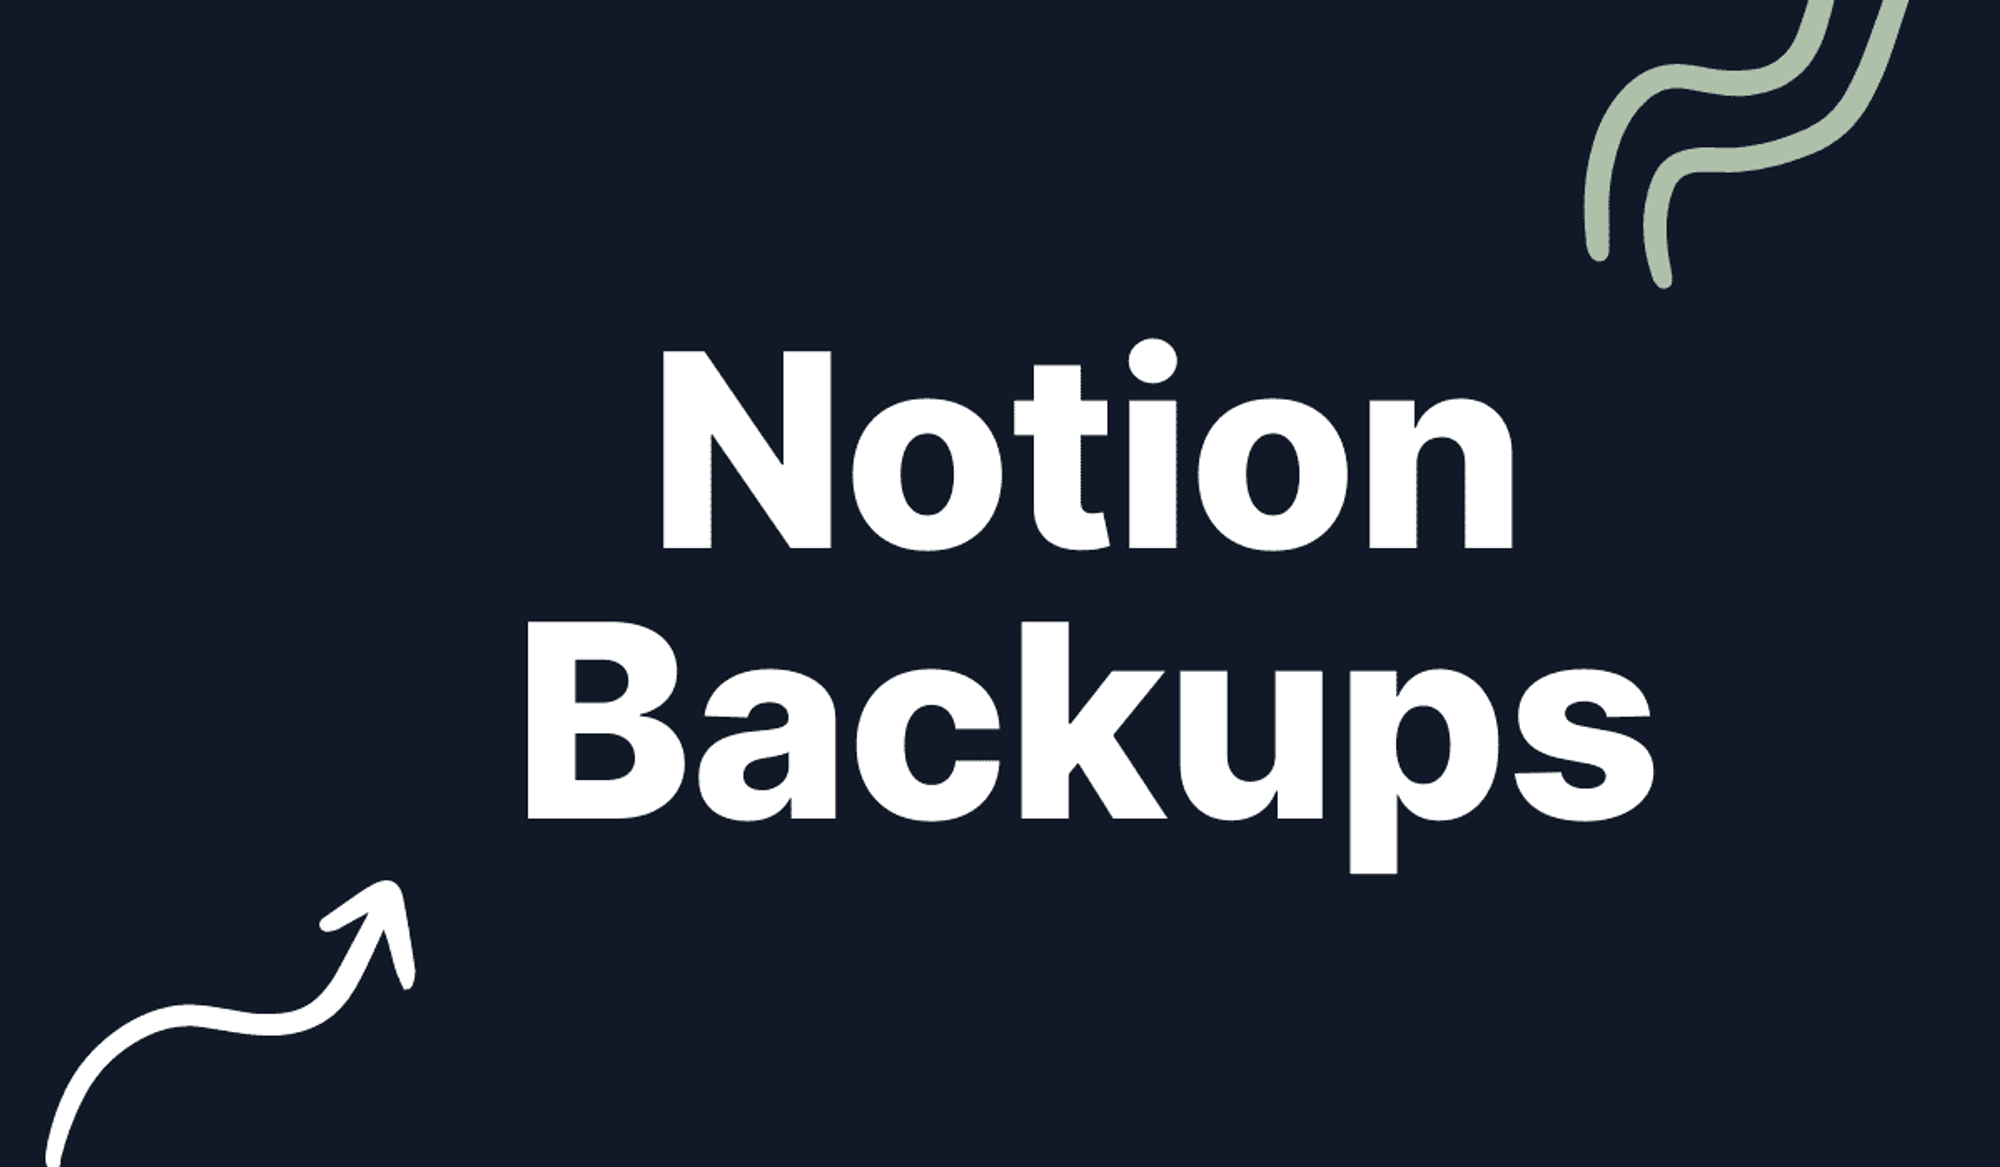 Automating Notion backups using Notion's API - Notion Backups